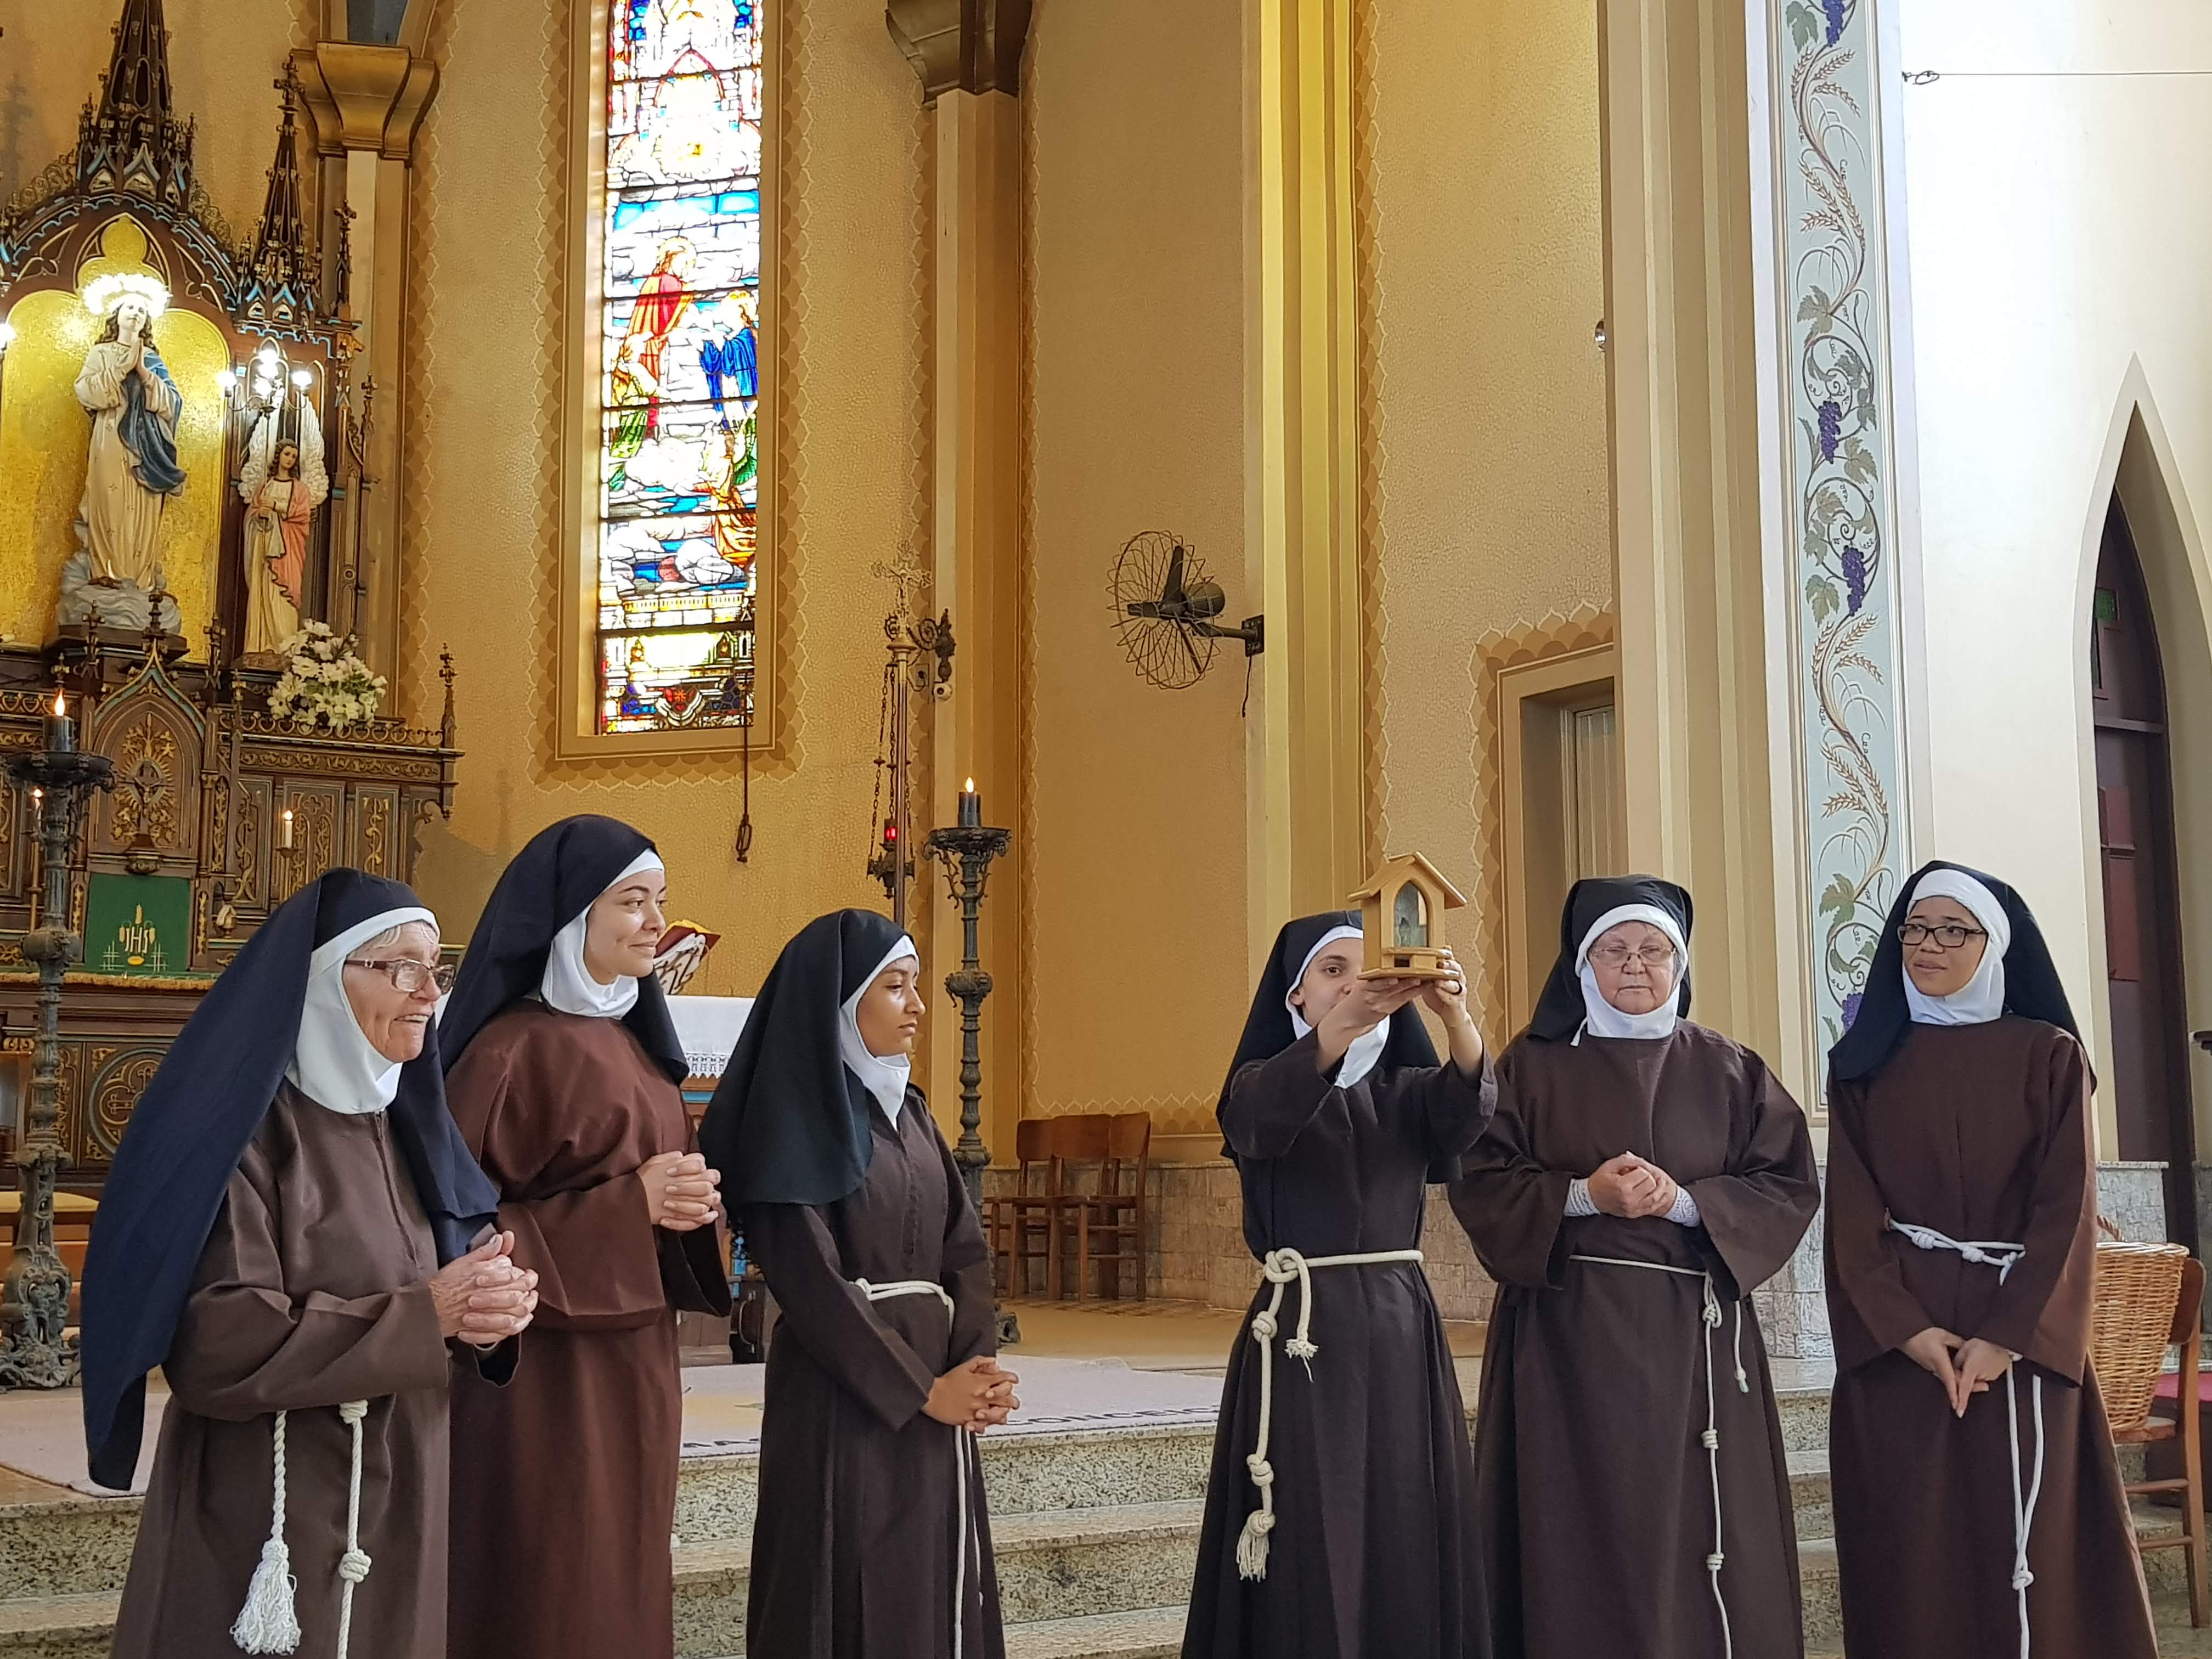 Reprodução/ Irmãs Franciscanas da Penitência e Caridade Cristã